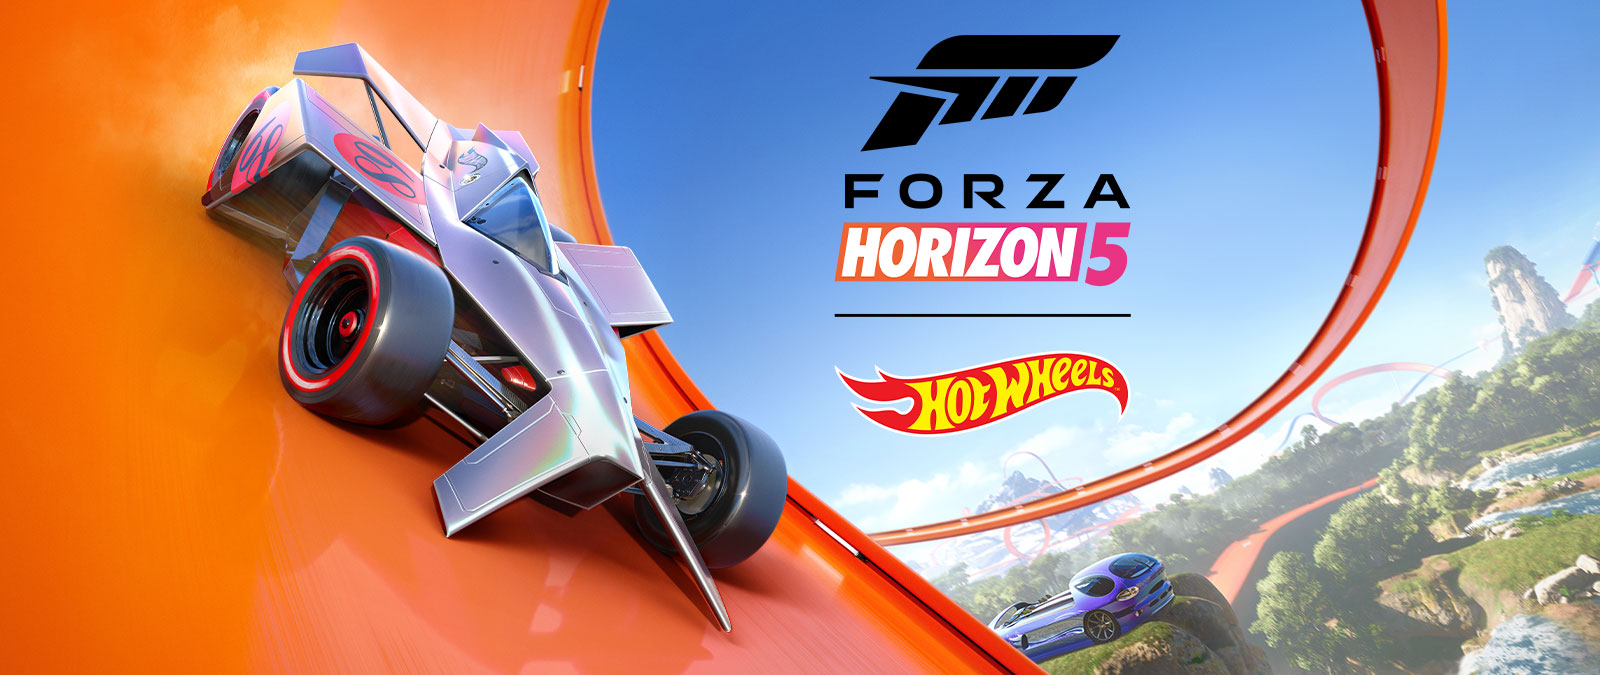 Forza Horizon 5、Hot Wheels、車がホットウィール トラックのループを疾走している。